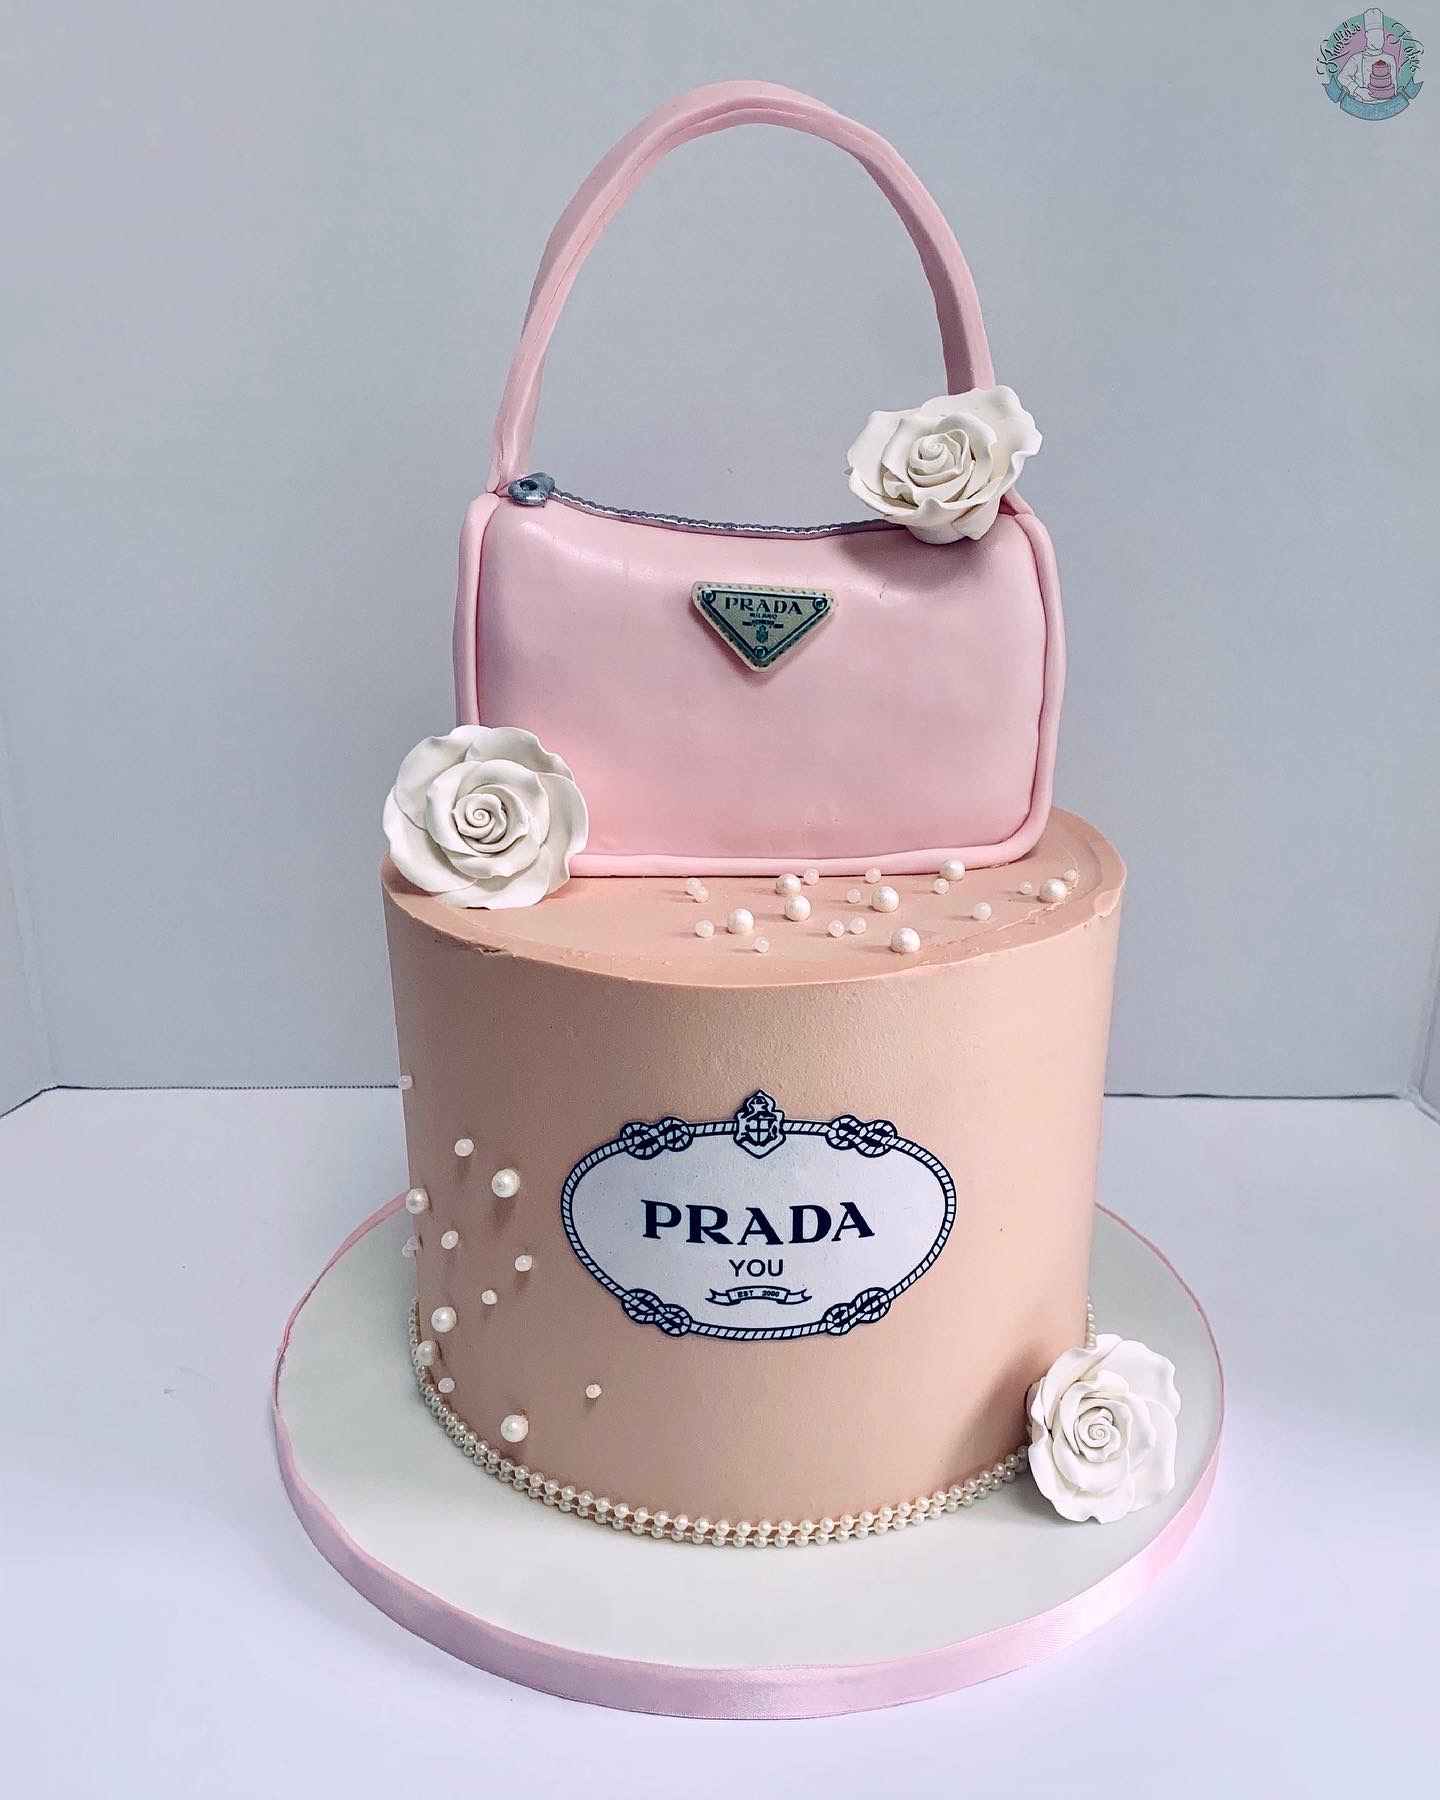 LADY DIOR Purse Cake | Handbag cakes, Purse cake, Luxury cake